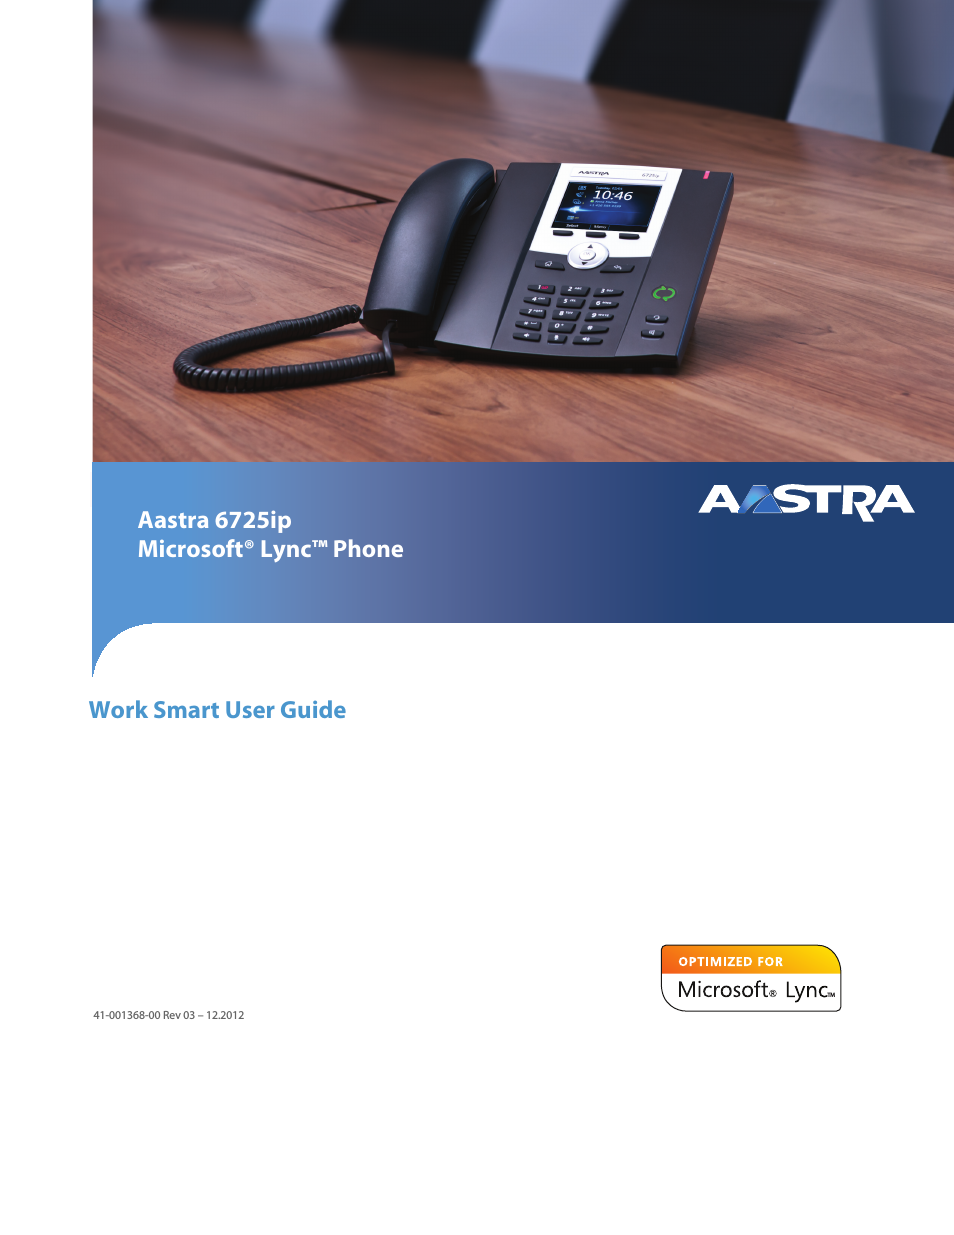 6725ip Work Smart User Guide EN